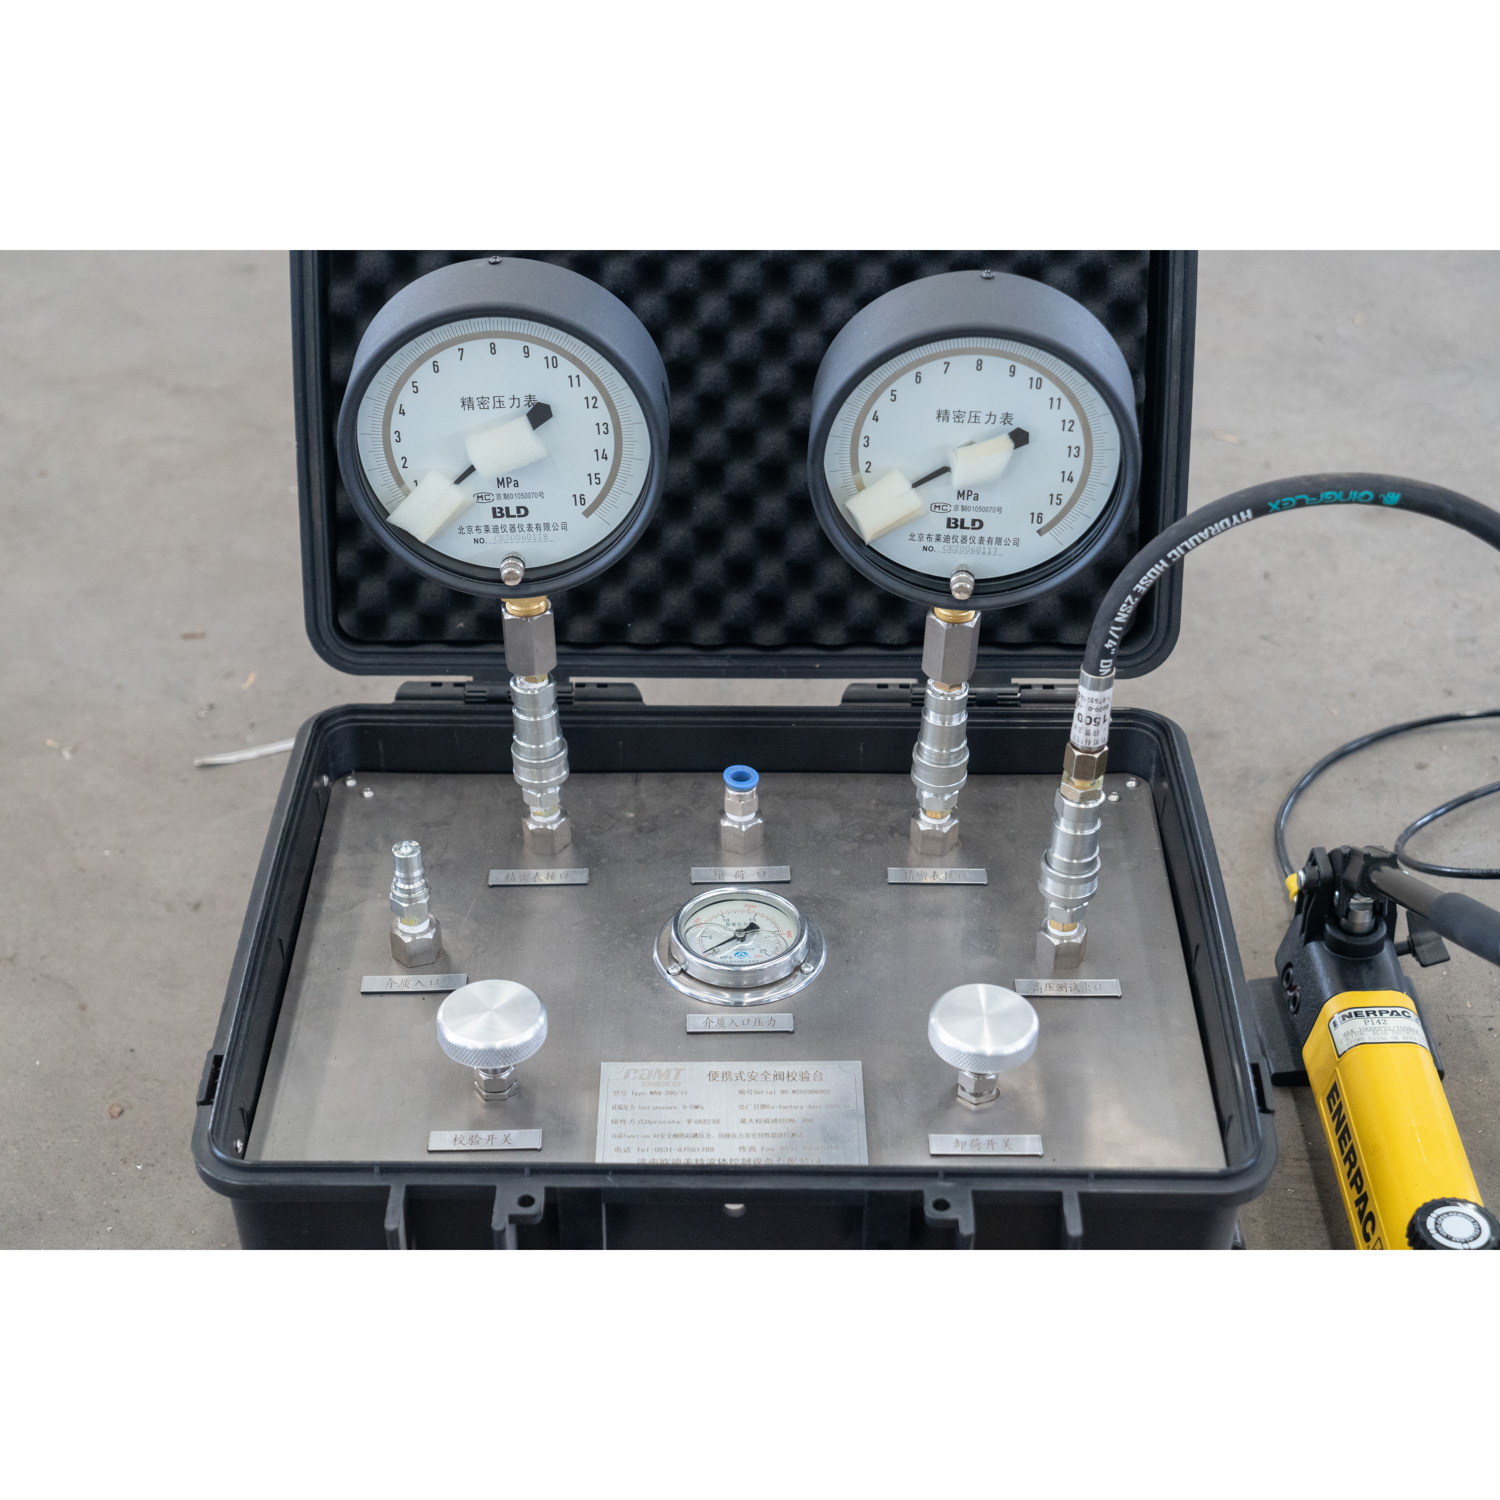 Pressure relief valve testing